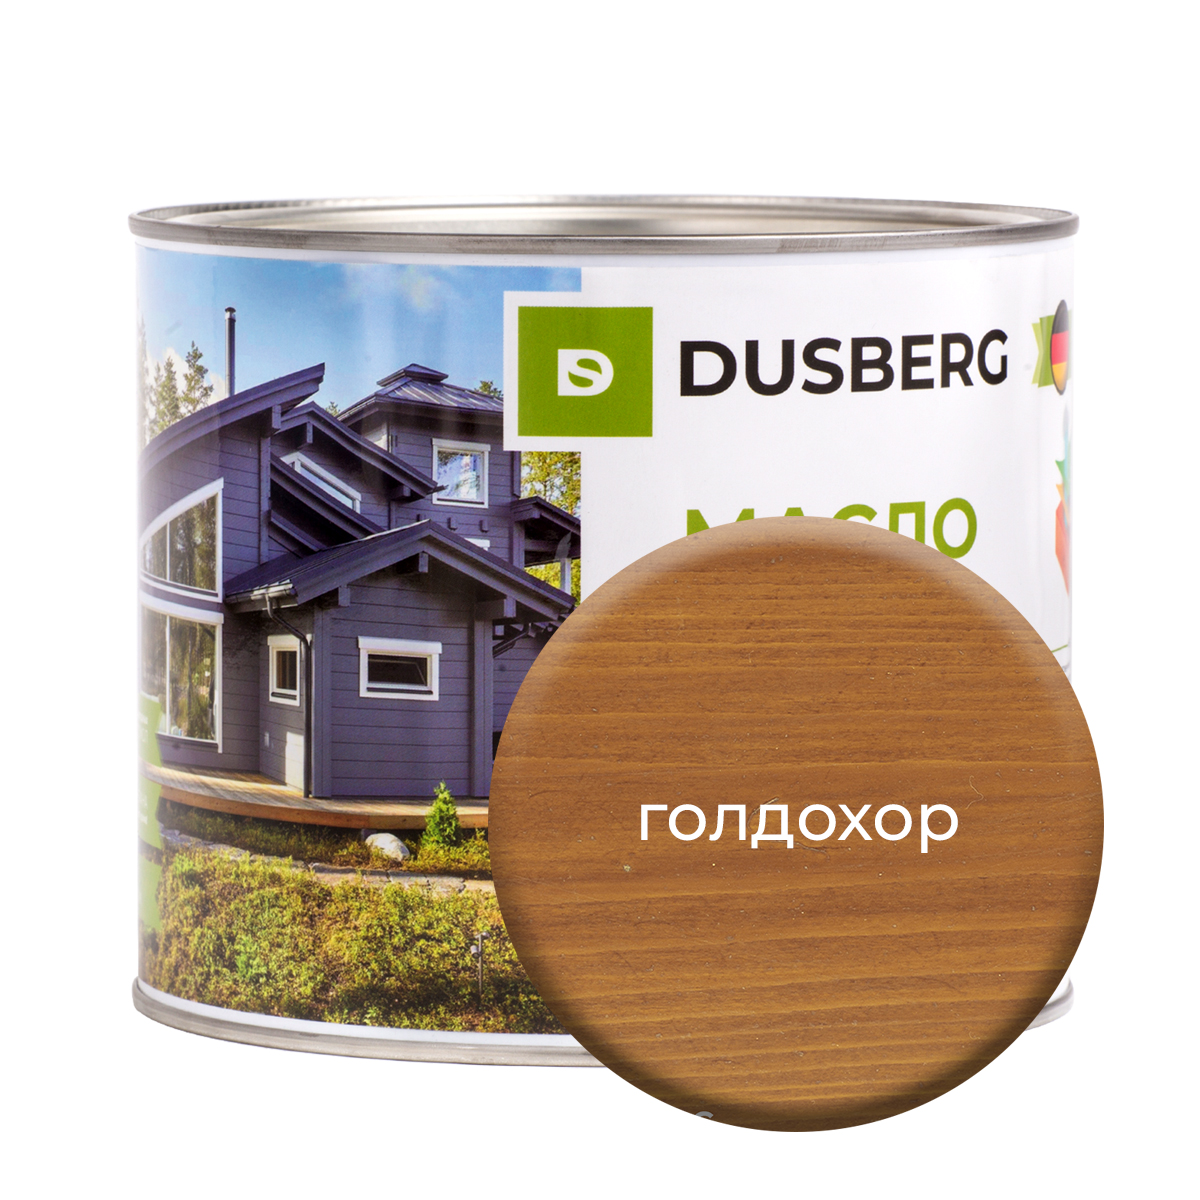 Масло Dusberg для дерева на бесцветной основе, 2 л Голдохор масло dusberg для дерева на бесцветной основе 750 мл голдохор